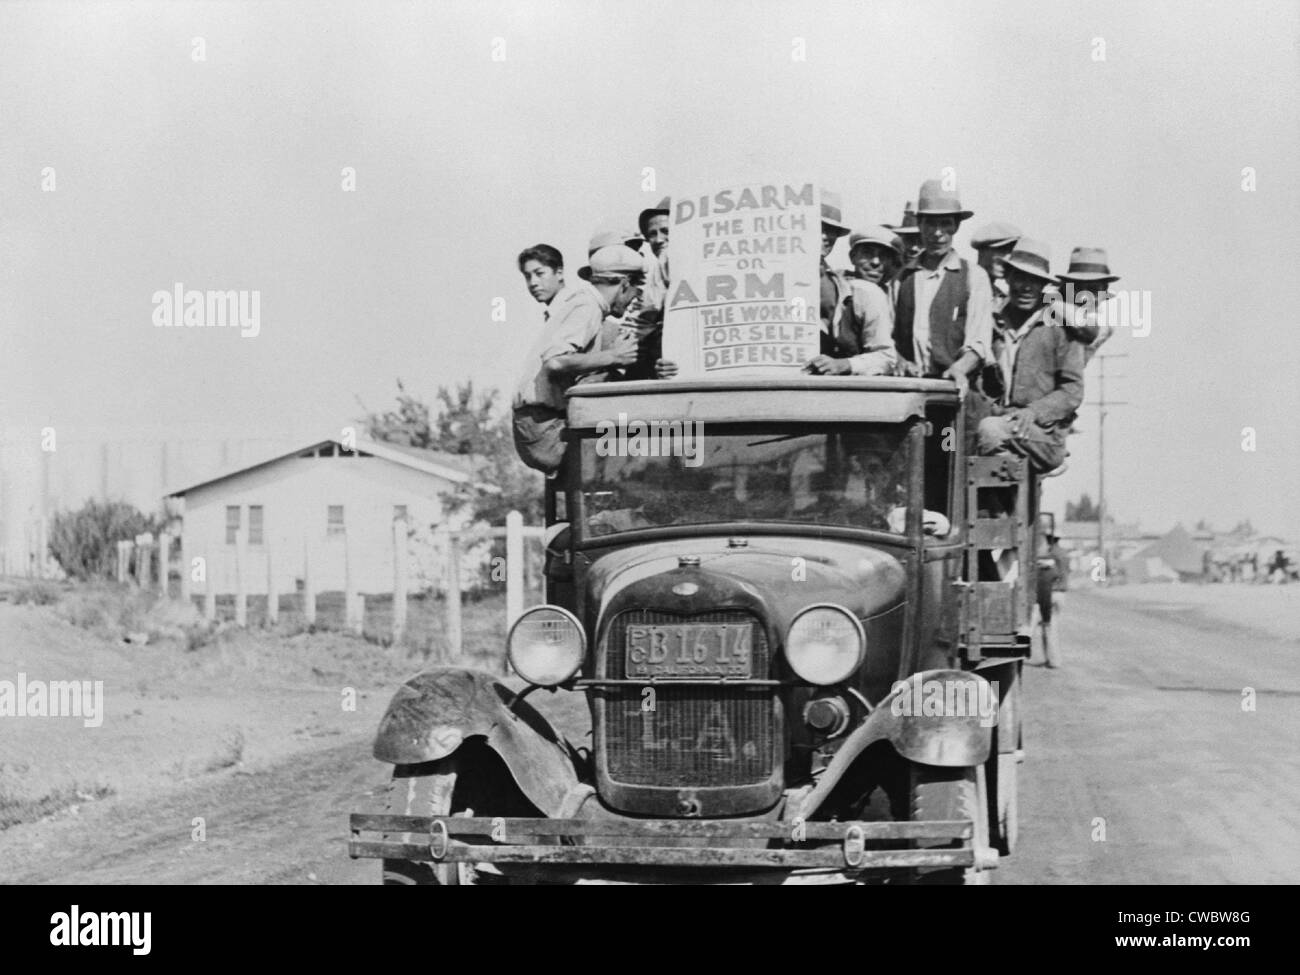 Mexikanisch-amerikanischen Arbeiter streiken in Kalifornien im Jahr 1933. Ihre Zeichen liest, "die reichen Bauern zu entwaffnen oder bewaffnen die Arbeiter für Stockfoto